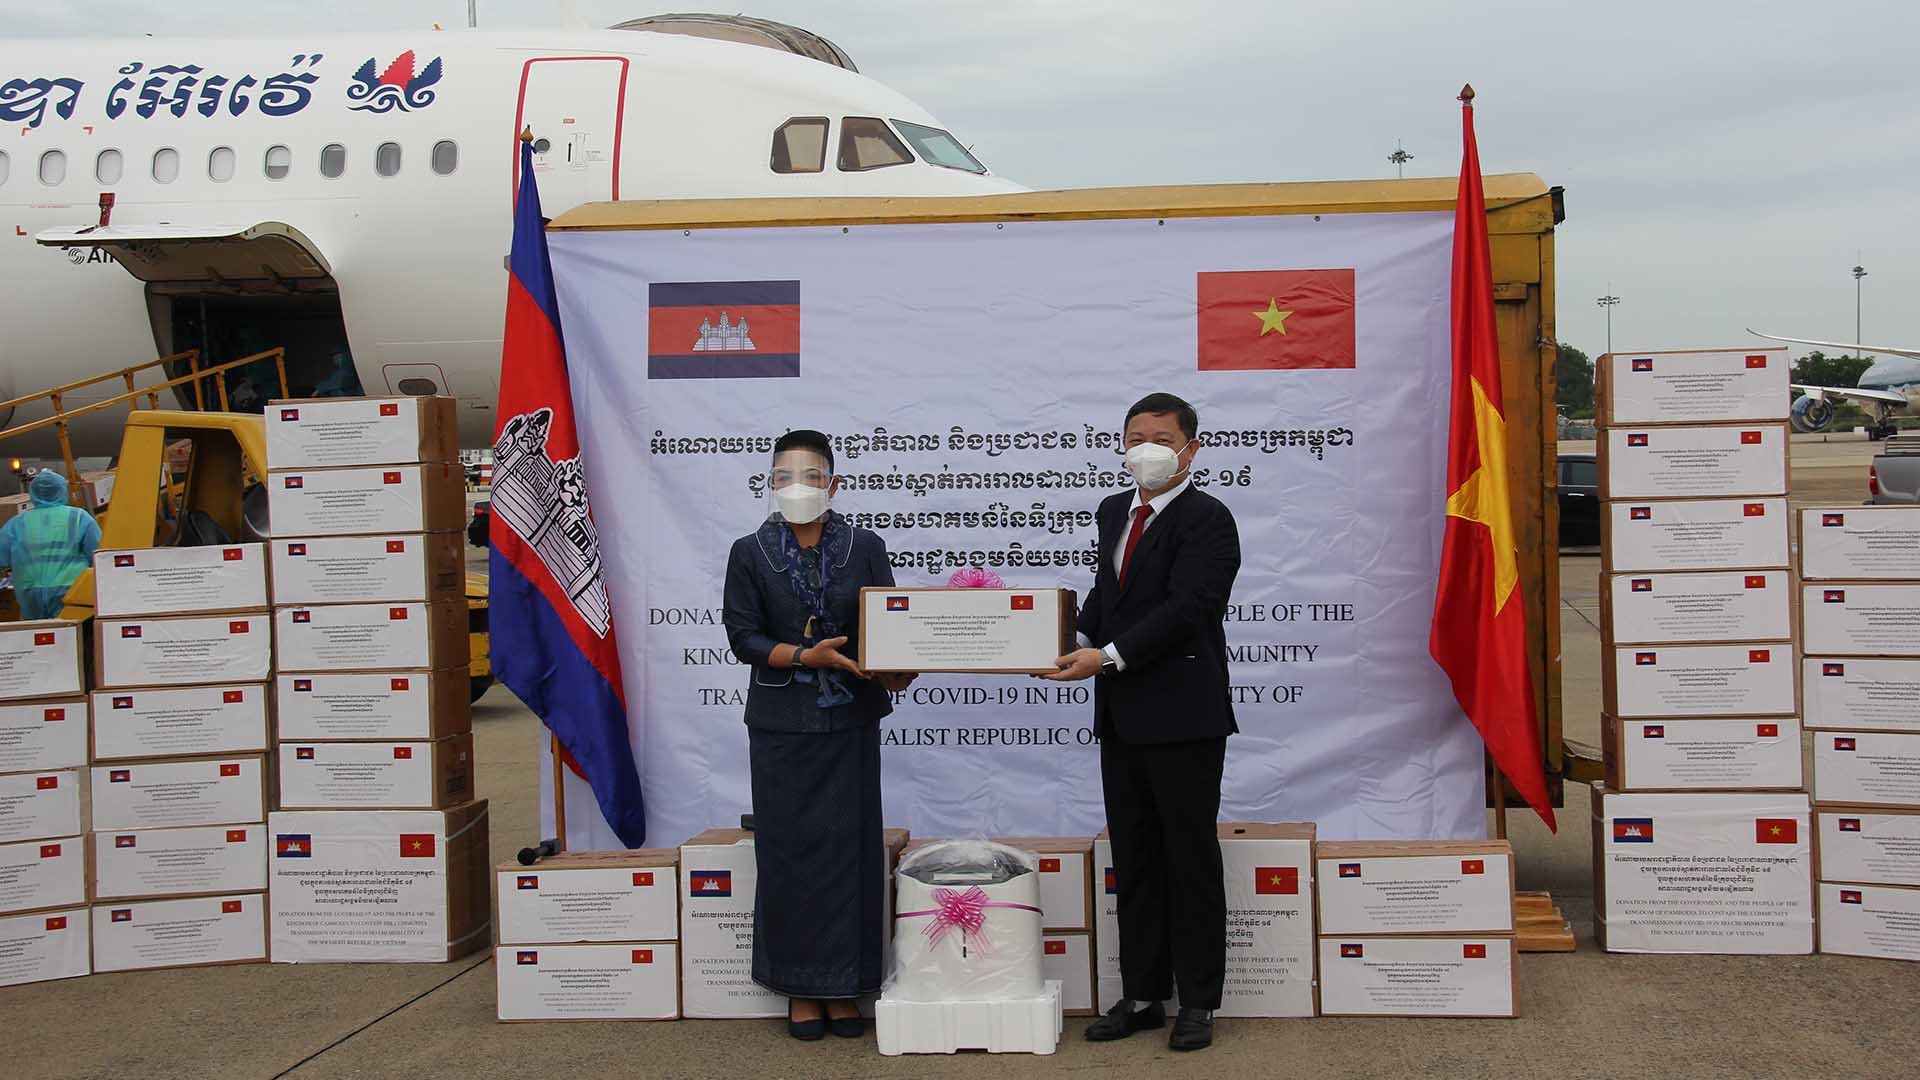 Ủy ban nhân dân Thành phố Hồ Chí Minh tổ chức lễ tiếp nhận lô hàng do Chính phủ và nhân dân Vương quốc Campuchia gửi tặng hỗ trợ Thành phố Hồ Chí Minh phòng, chống dịch Covid-19.